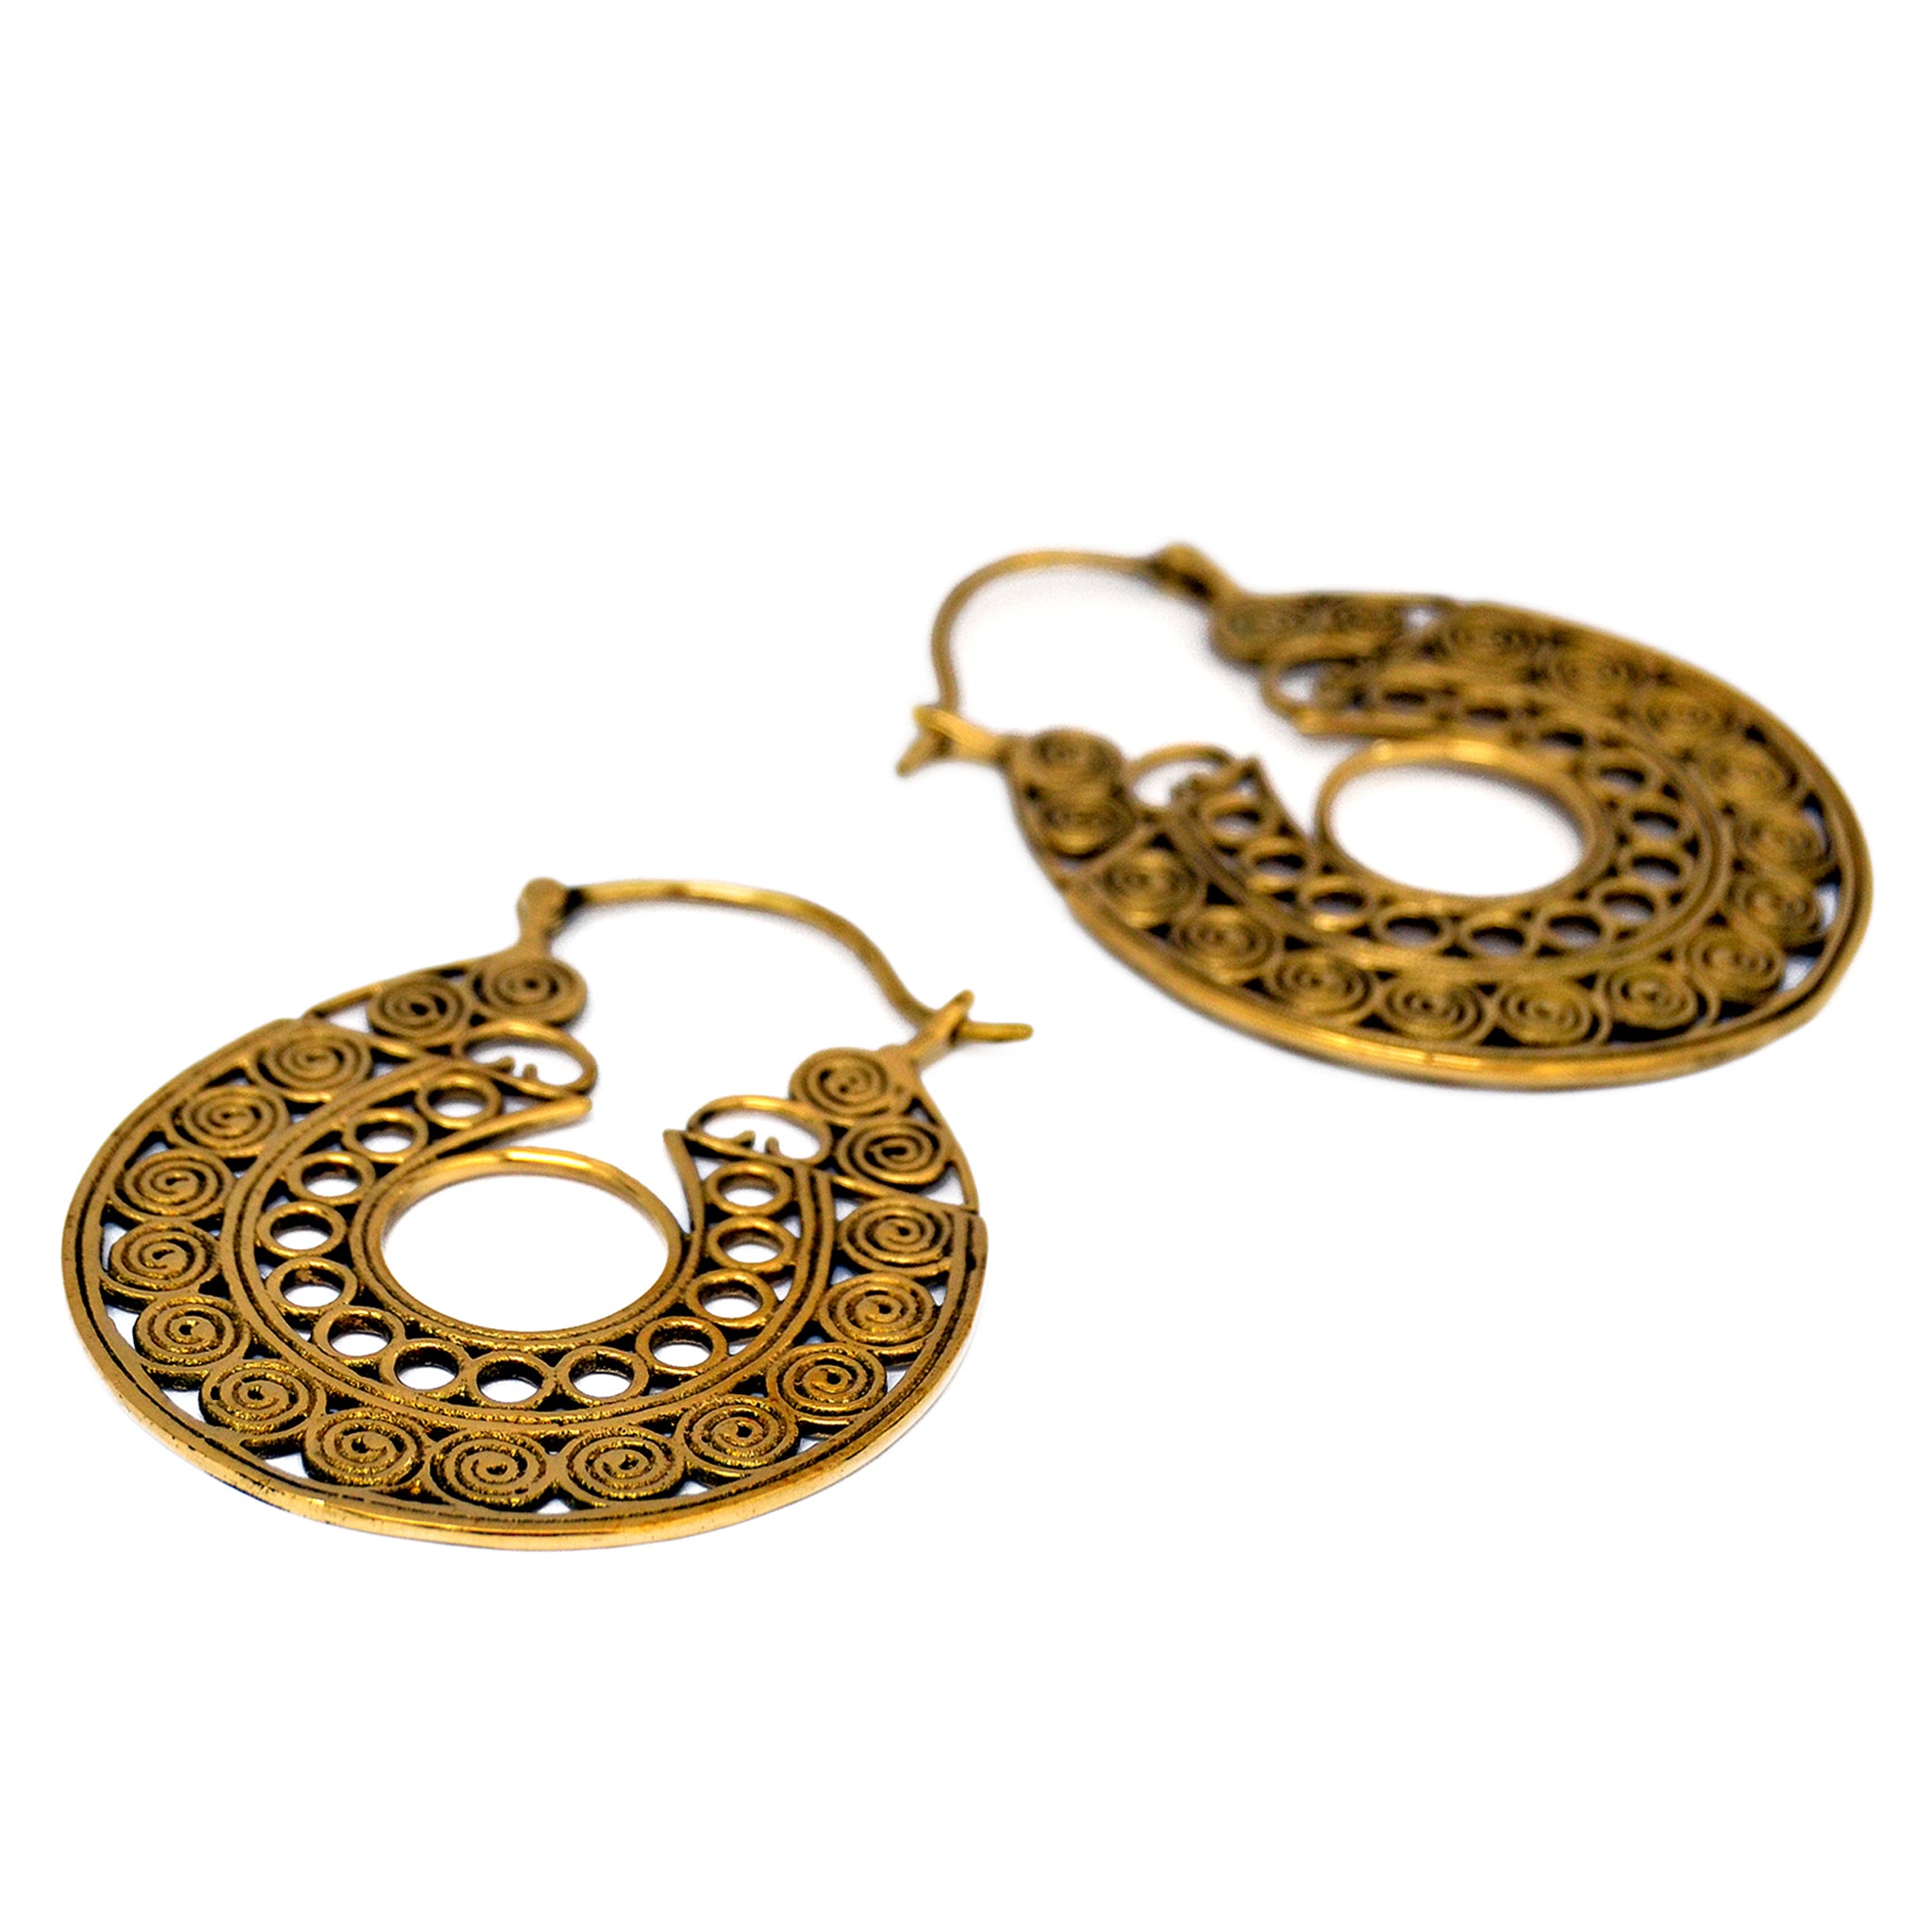 Golden tribal filigree hoop earrings on white background